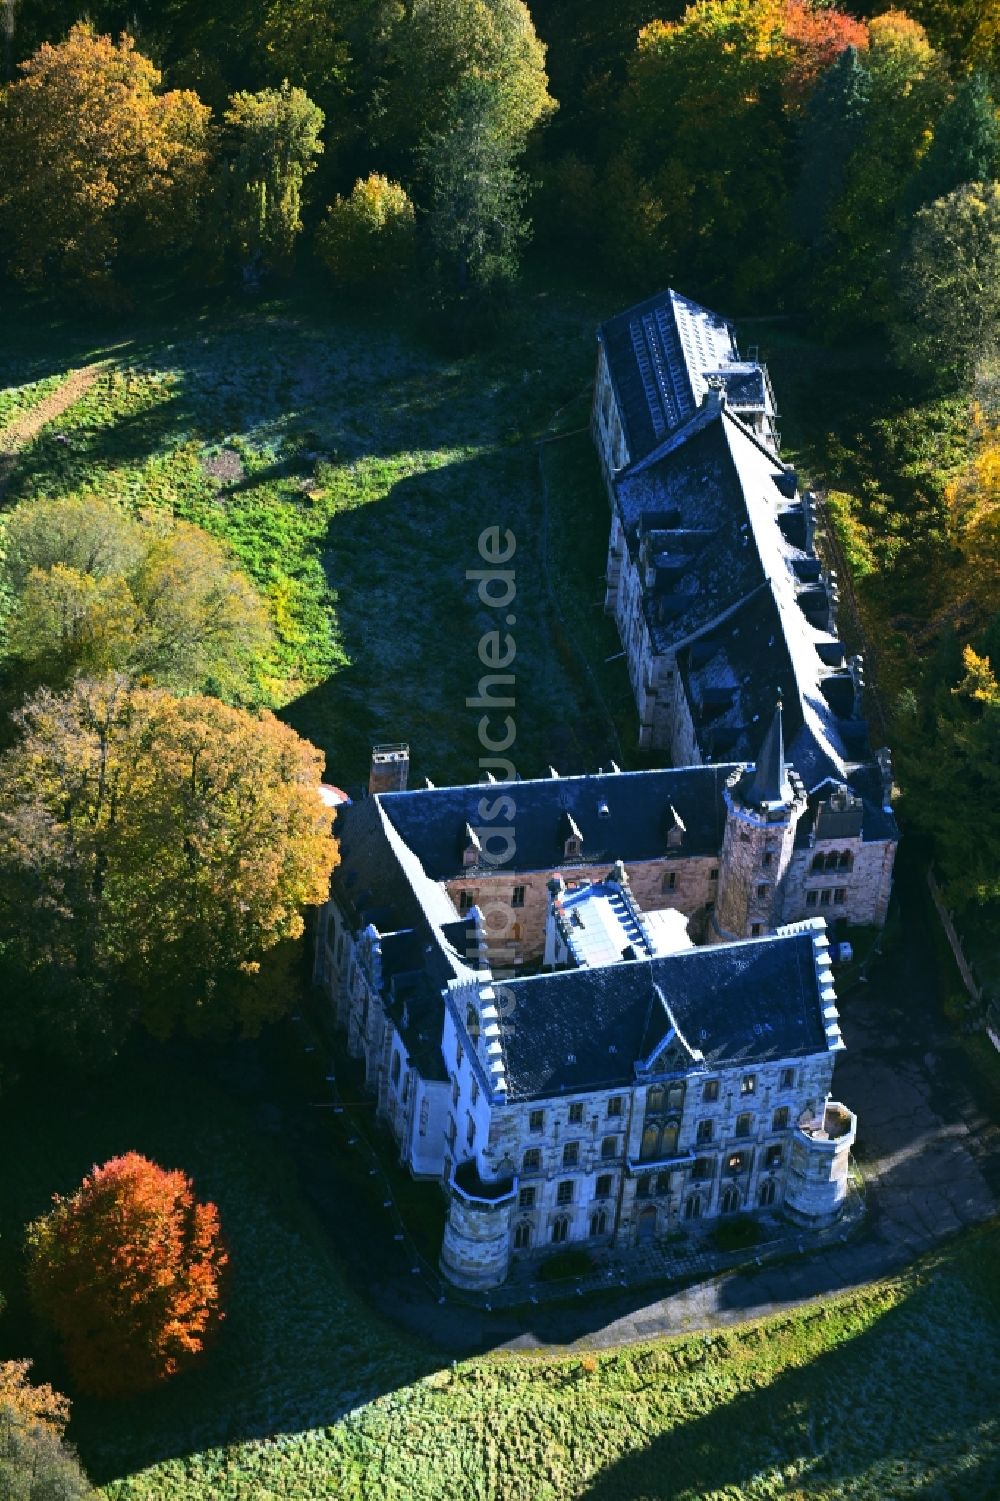 Luftbild Friedrichroda - Anlage des Schlosses Reinhardsbrunn in Reinhardsbrunn im Bundesland Thüringen, Deutschland